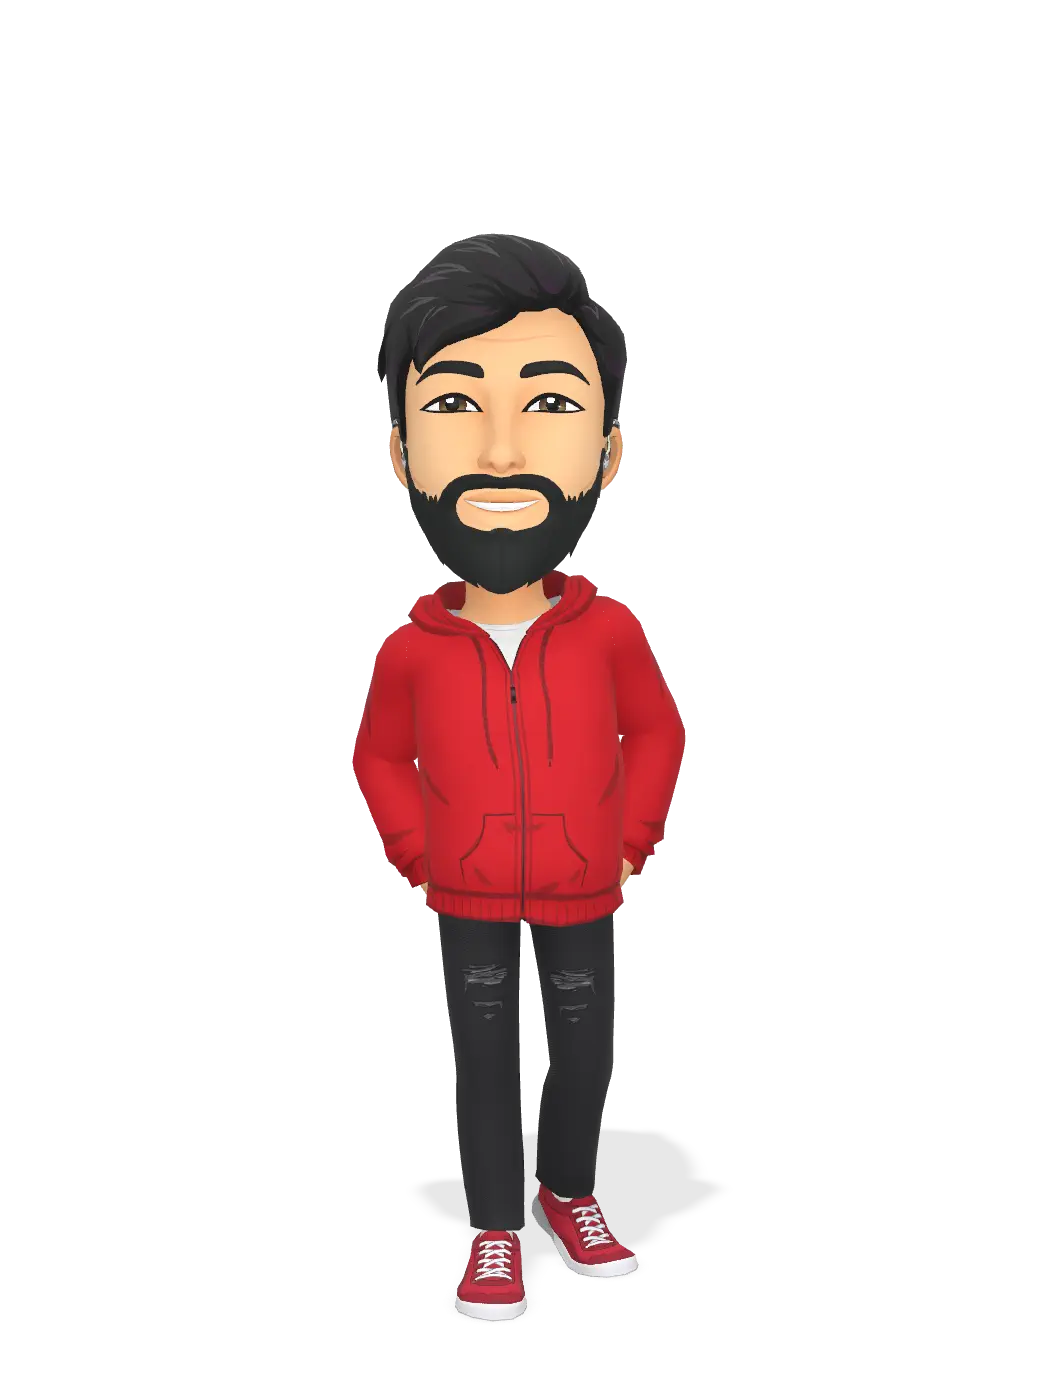 3D Bitmoji for ghaith1690 avatar